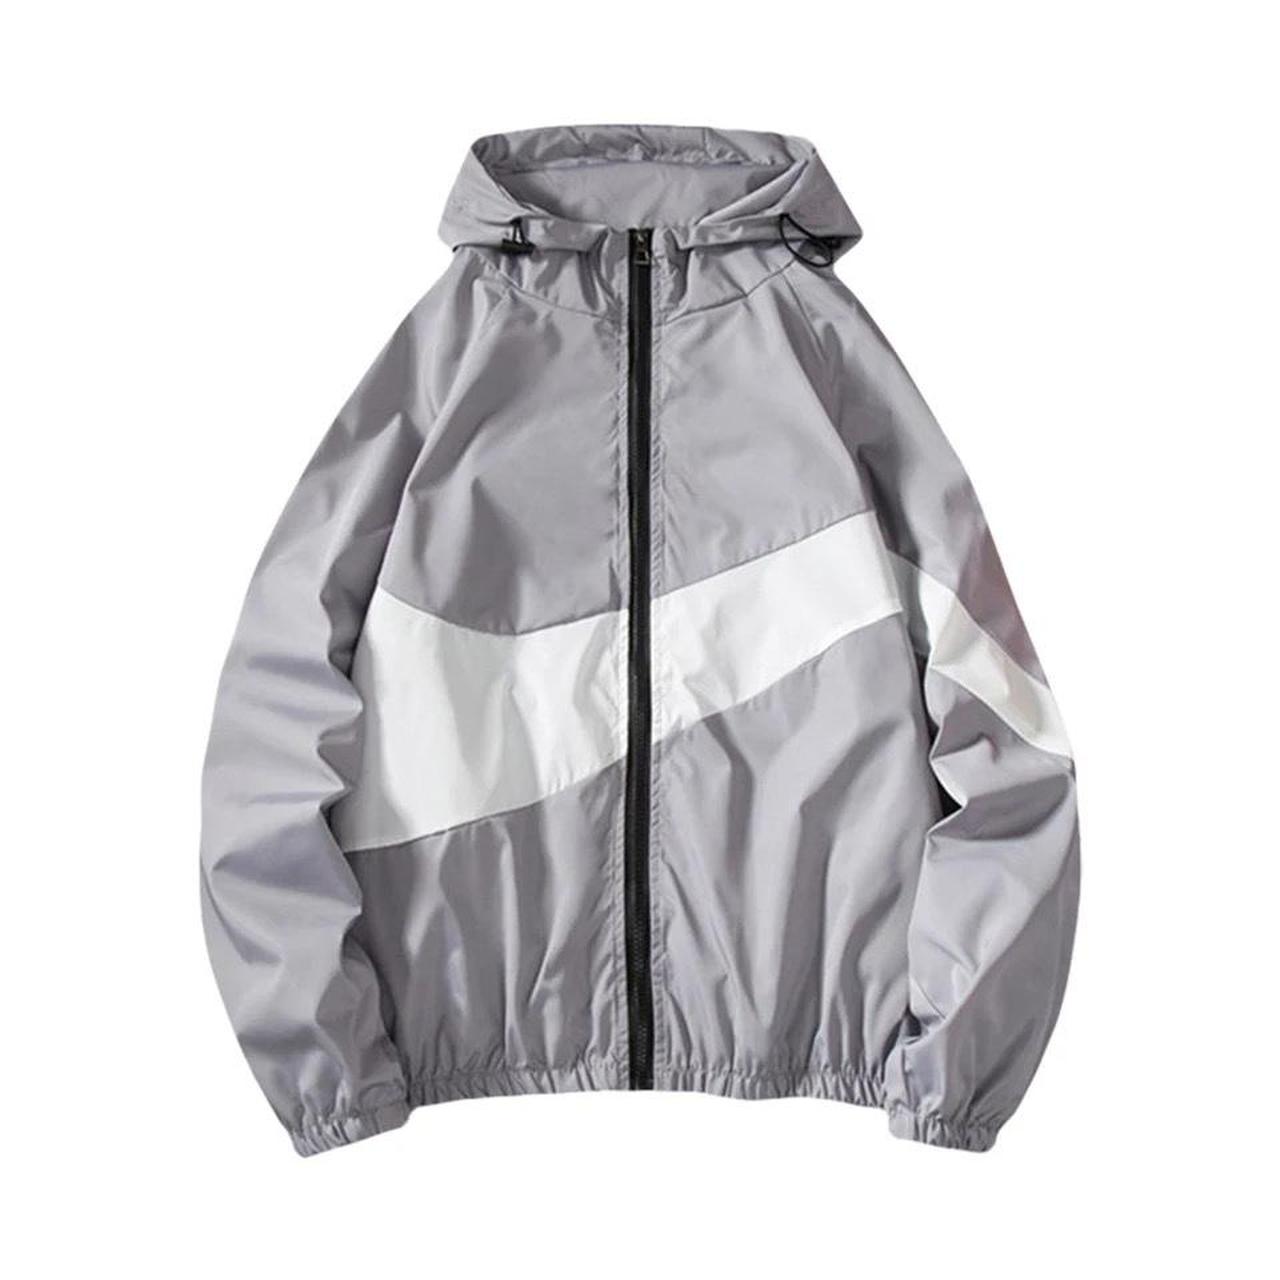 Nike Swoosh jacket long sleeve windbreaker -... - Depop